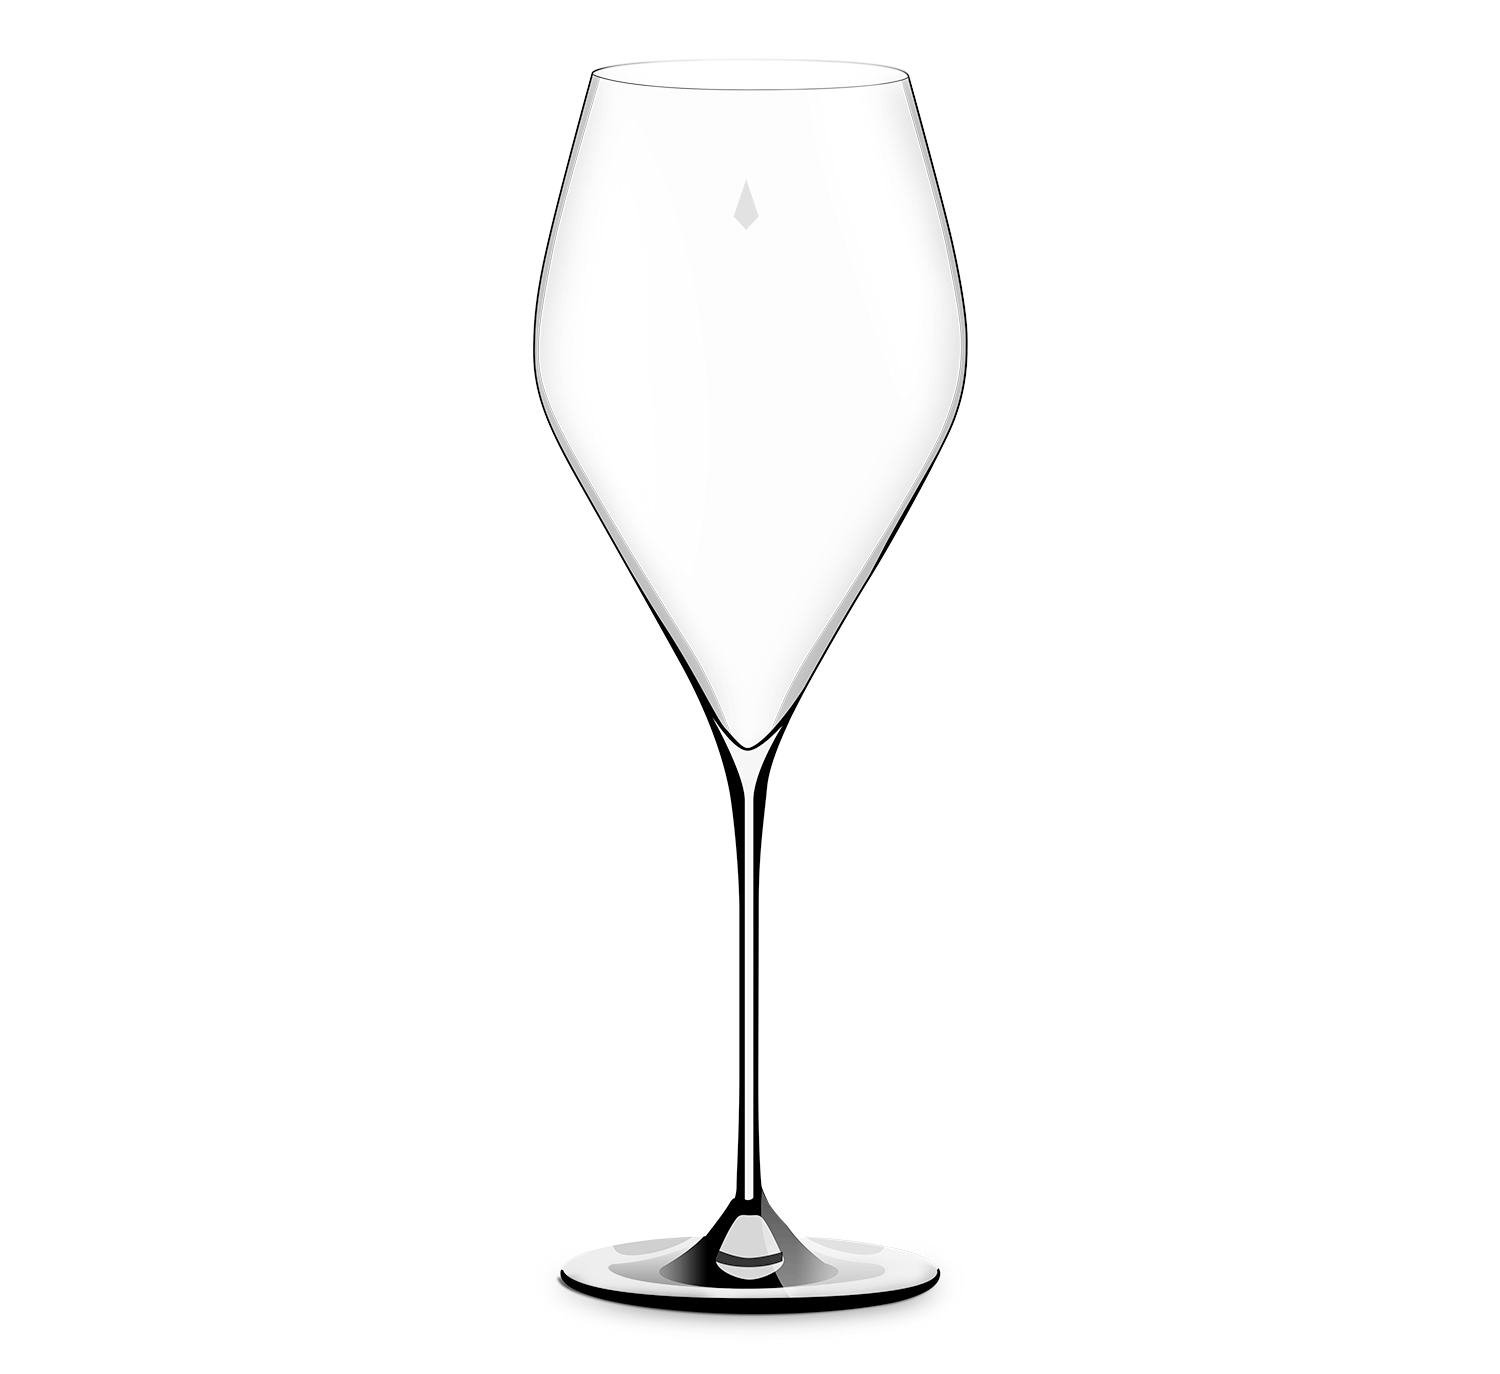 Free black wine glass icon - Download black wine glass icon